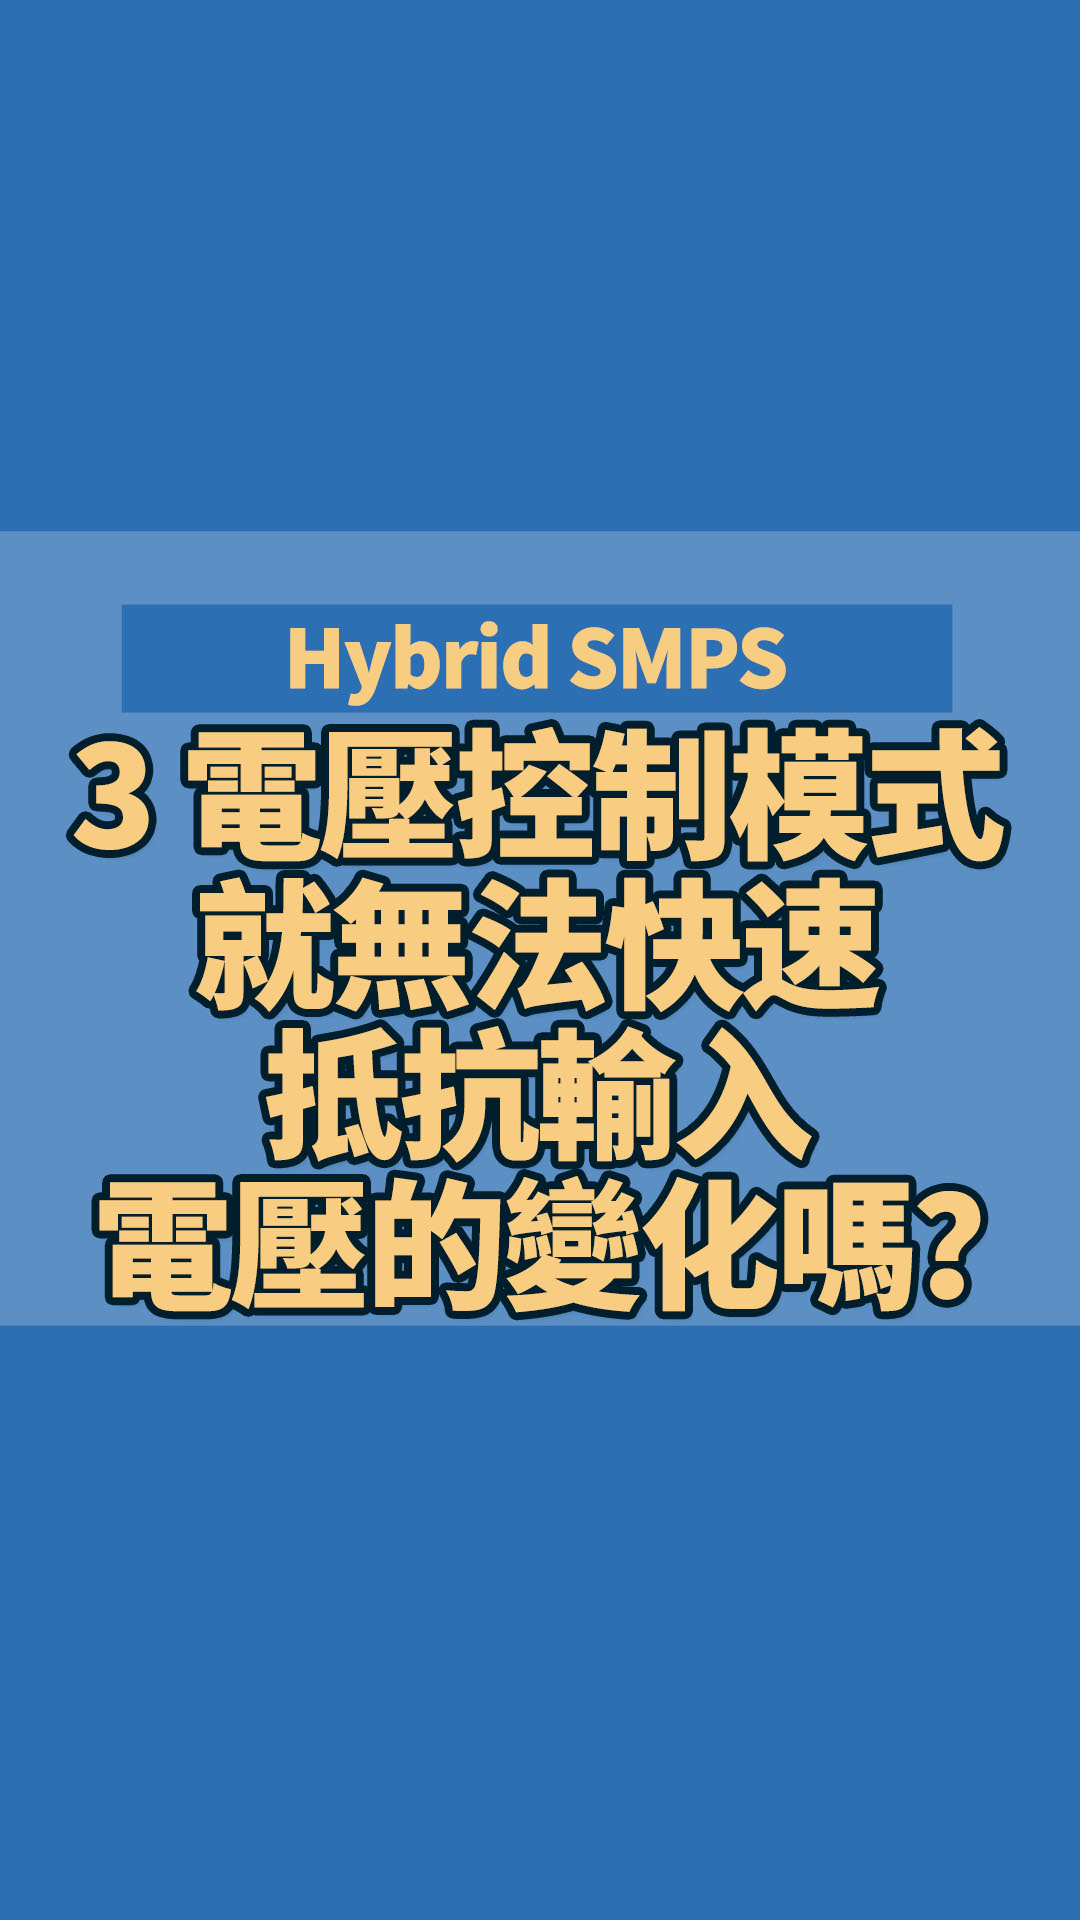 Hybrid SMPS 3 電壓控制模式就無法快速抵抗輸入電壓的變化嗎？試試自適應增益前饋控制？